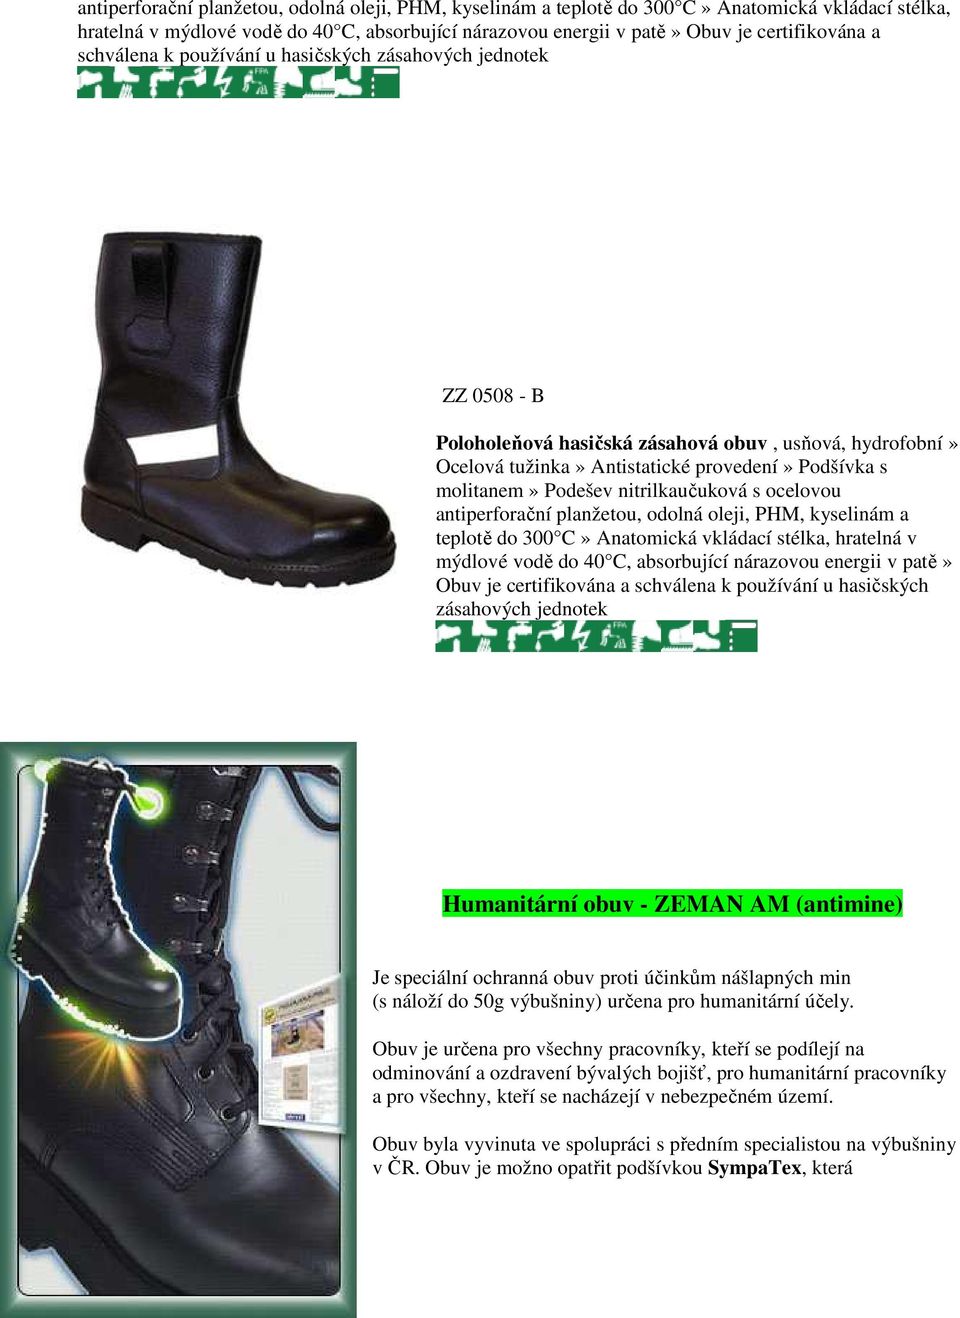 nitrilkaučuková s ocelovou  schválena k používání u hasičských zásahových jednotek Humanitární obuv - ZEMAN AM (antimine) Je speciální ochranná obuv proti účinkům nášlapných min (s náloží do 50g